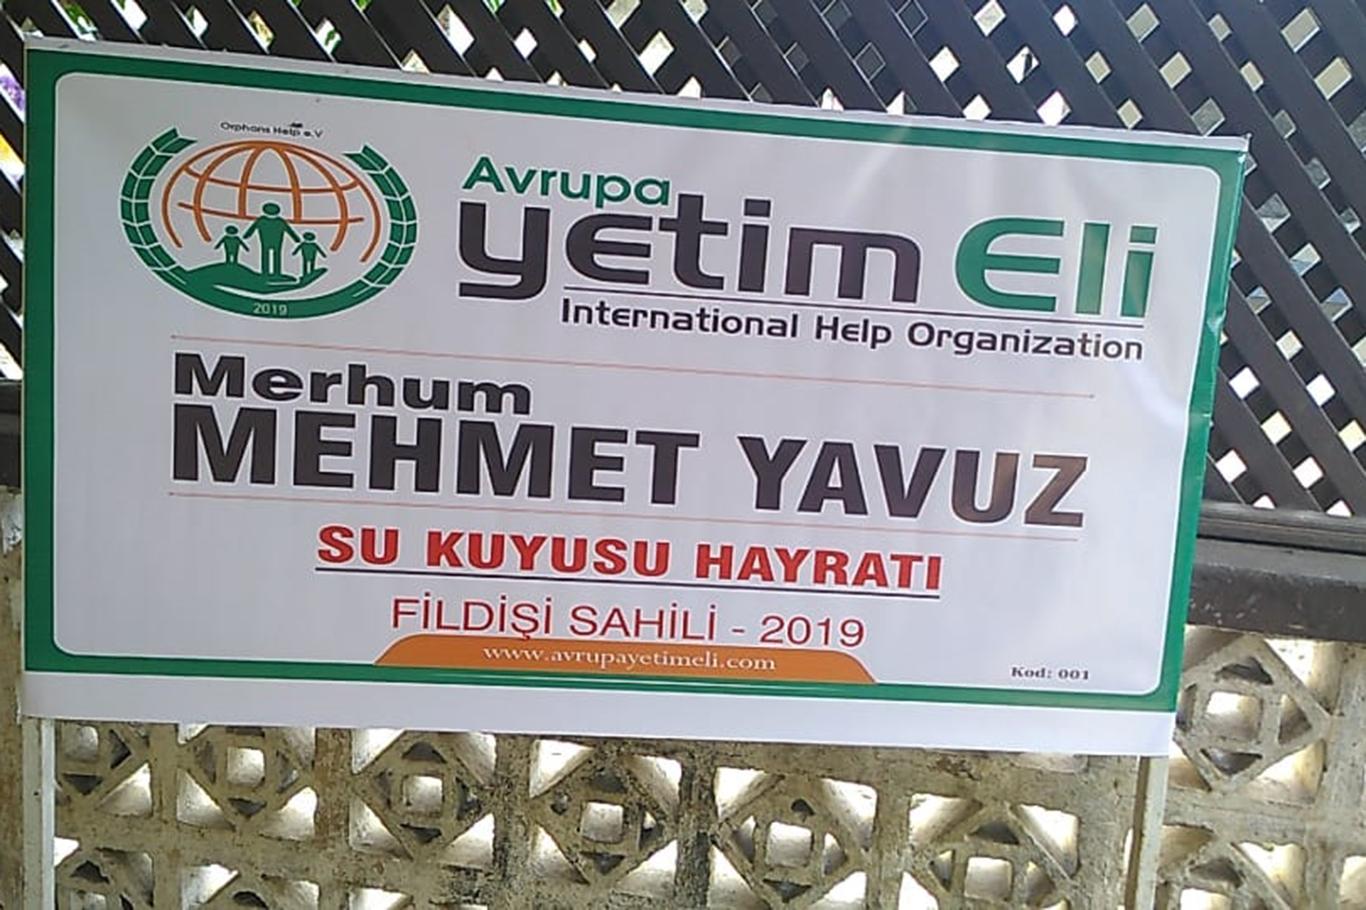 Avrupa Yetim Eli gönüllüleri merhum Mehmet Yavuz adına su kuyusu açtı